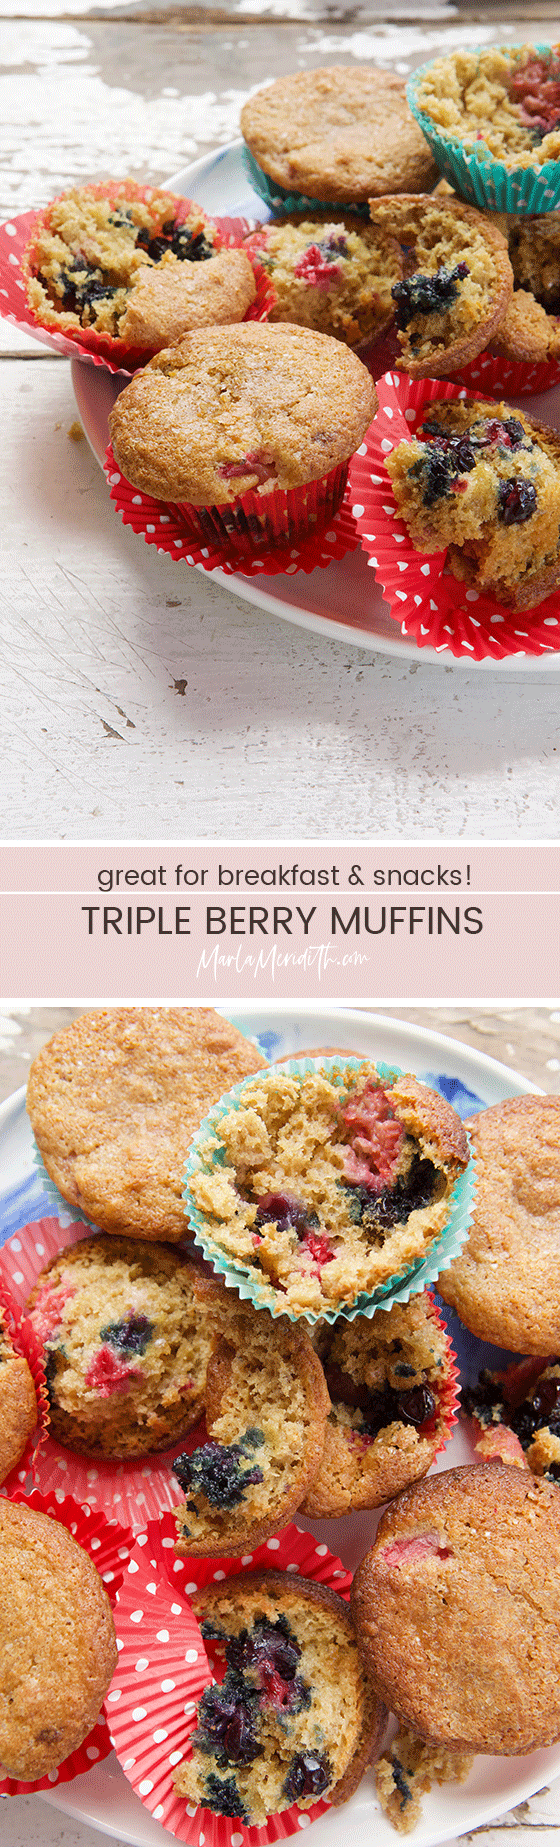 Delicious Triple Berry Muffins recipe